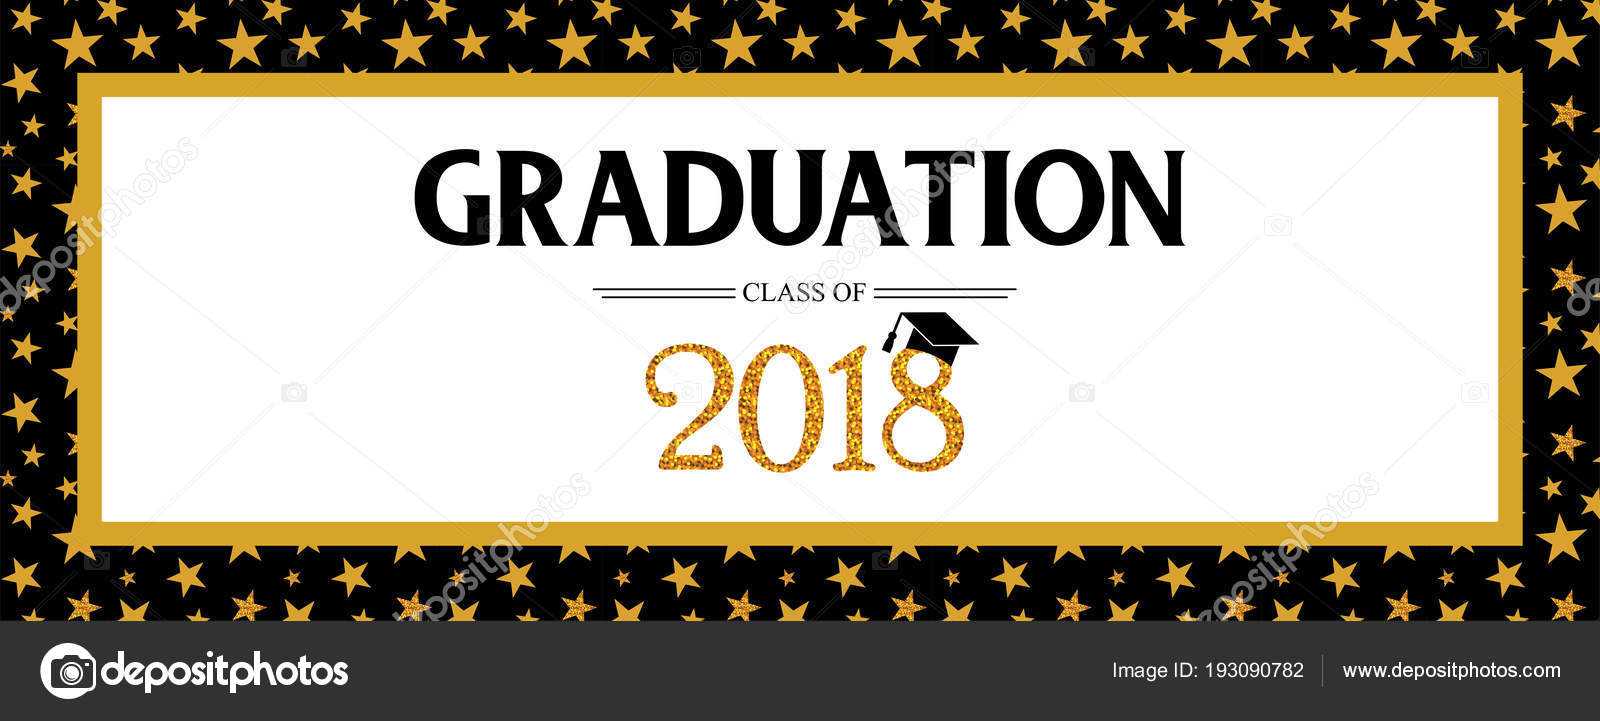 Graduation Banner Template | Graduation Class Of 2018 Pertaining To Graduation Banner Template